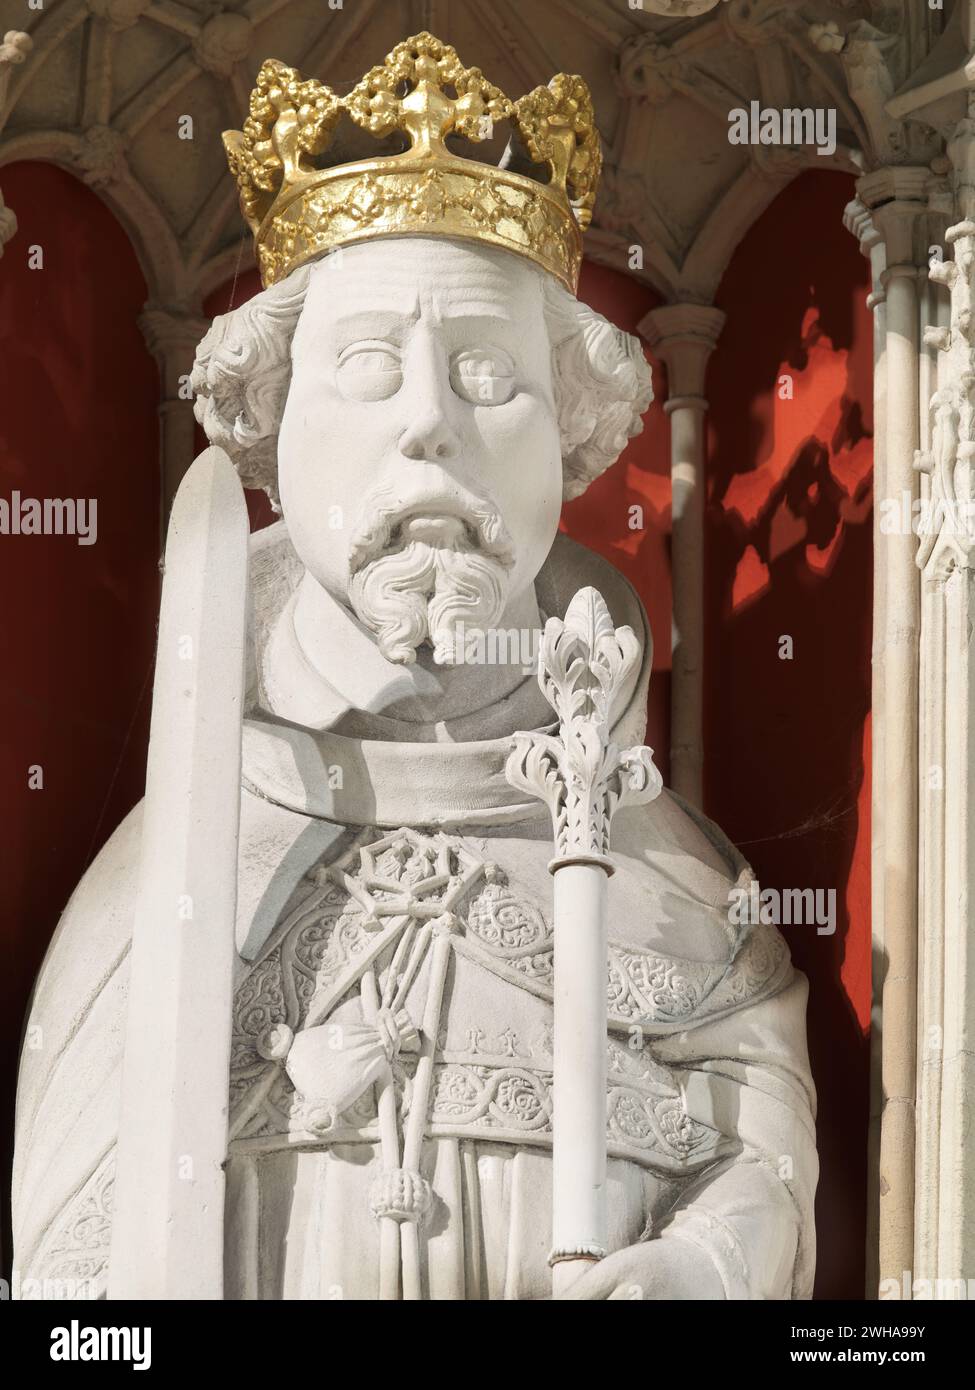 Statue des mittelalterlichen englischen Königs William Rufus auf der Leinwand im Münster (Kathedrale) in York, England. Stockfoto